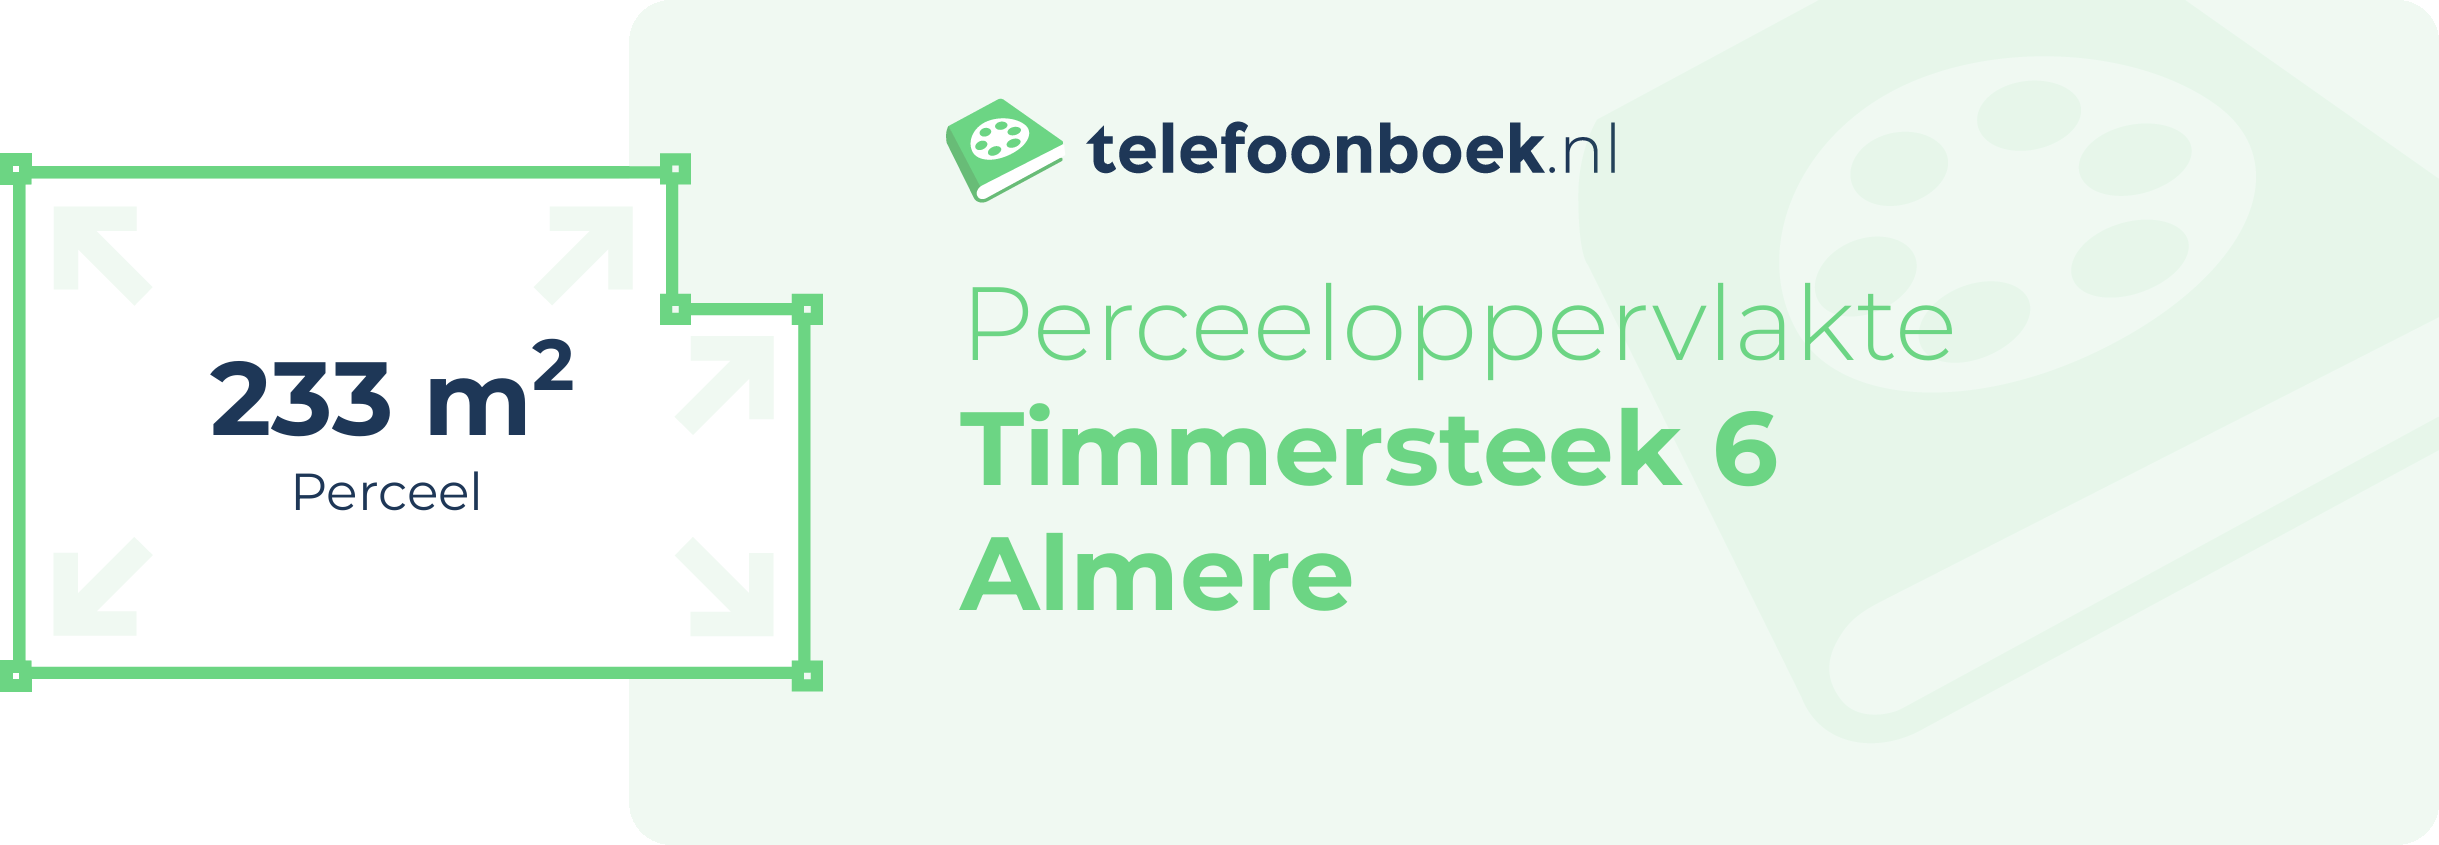 Perceeloppervlakte Timmersteek 6 Almere